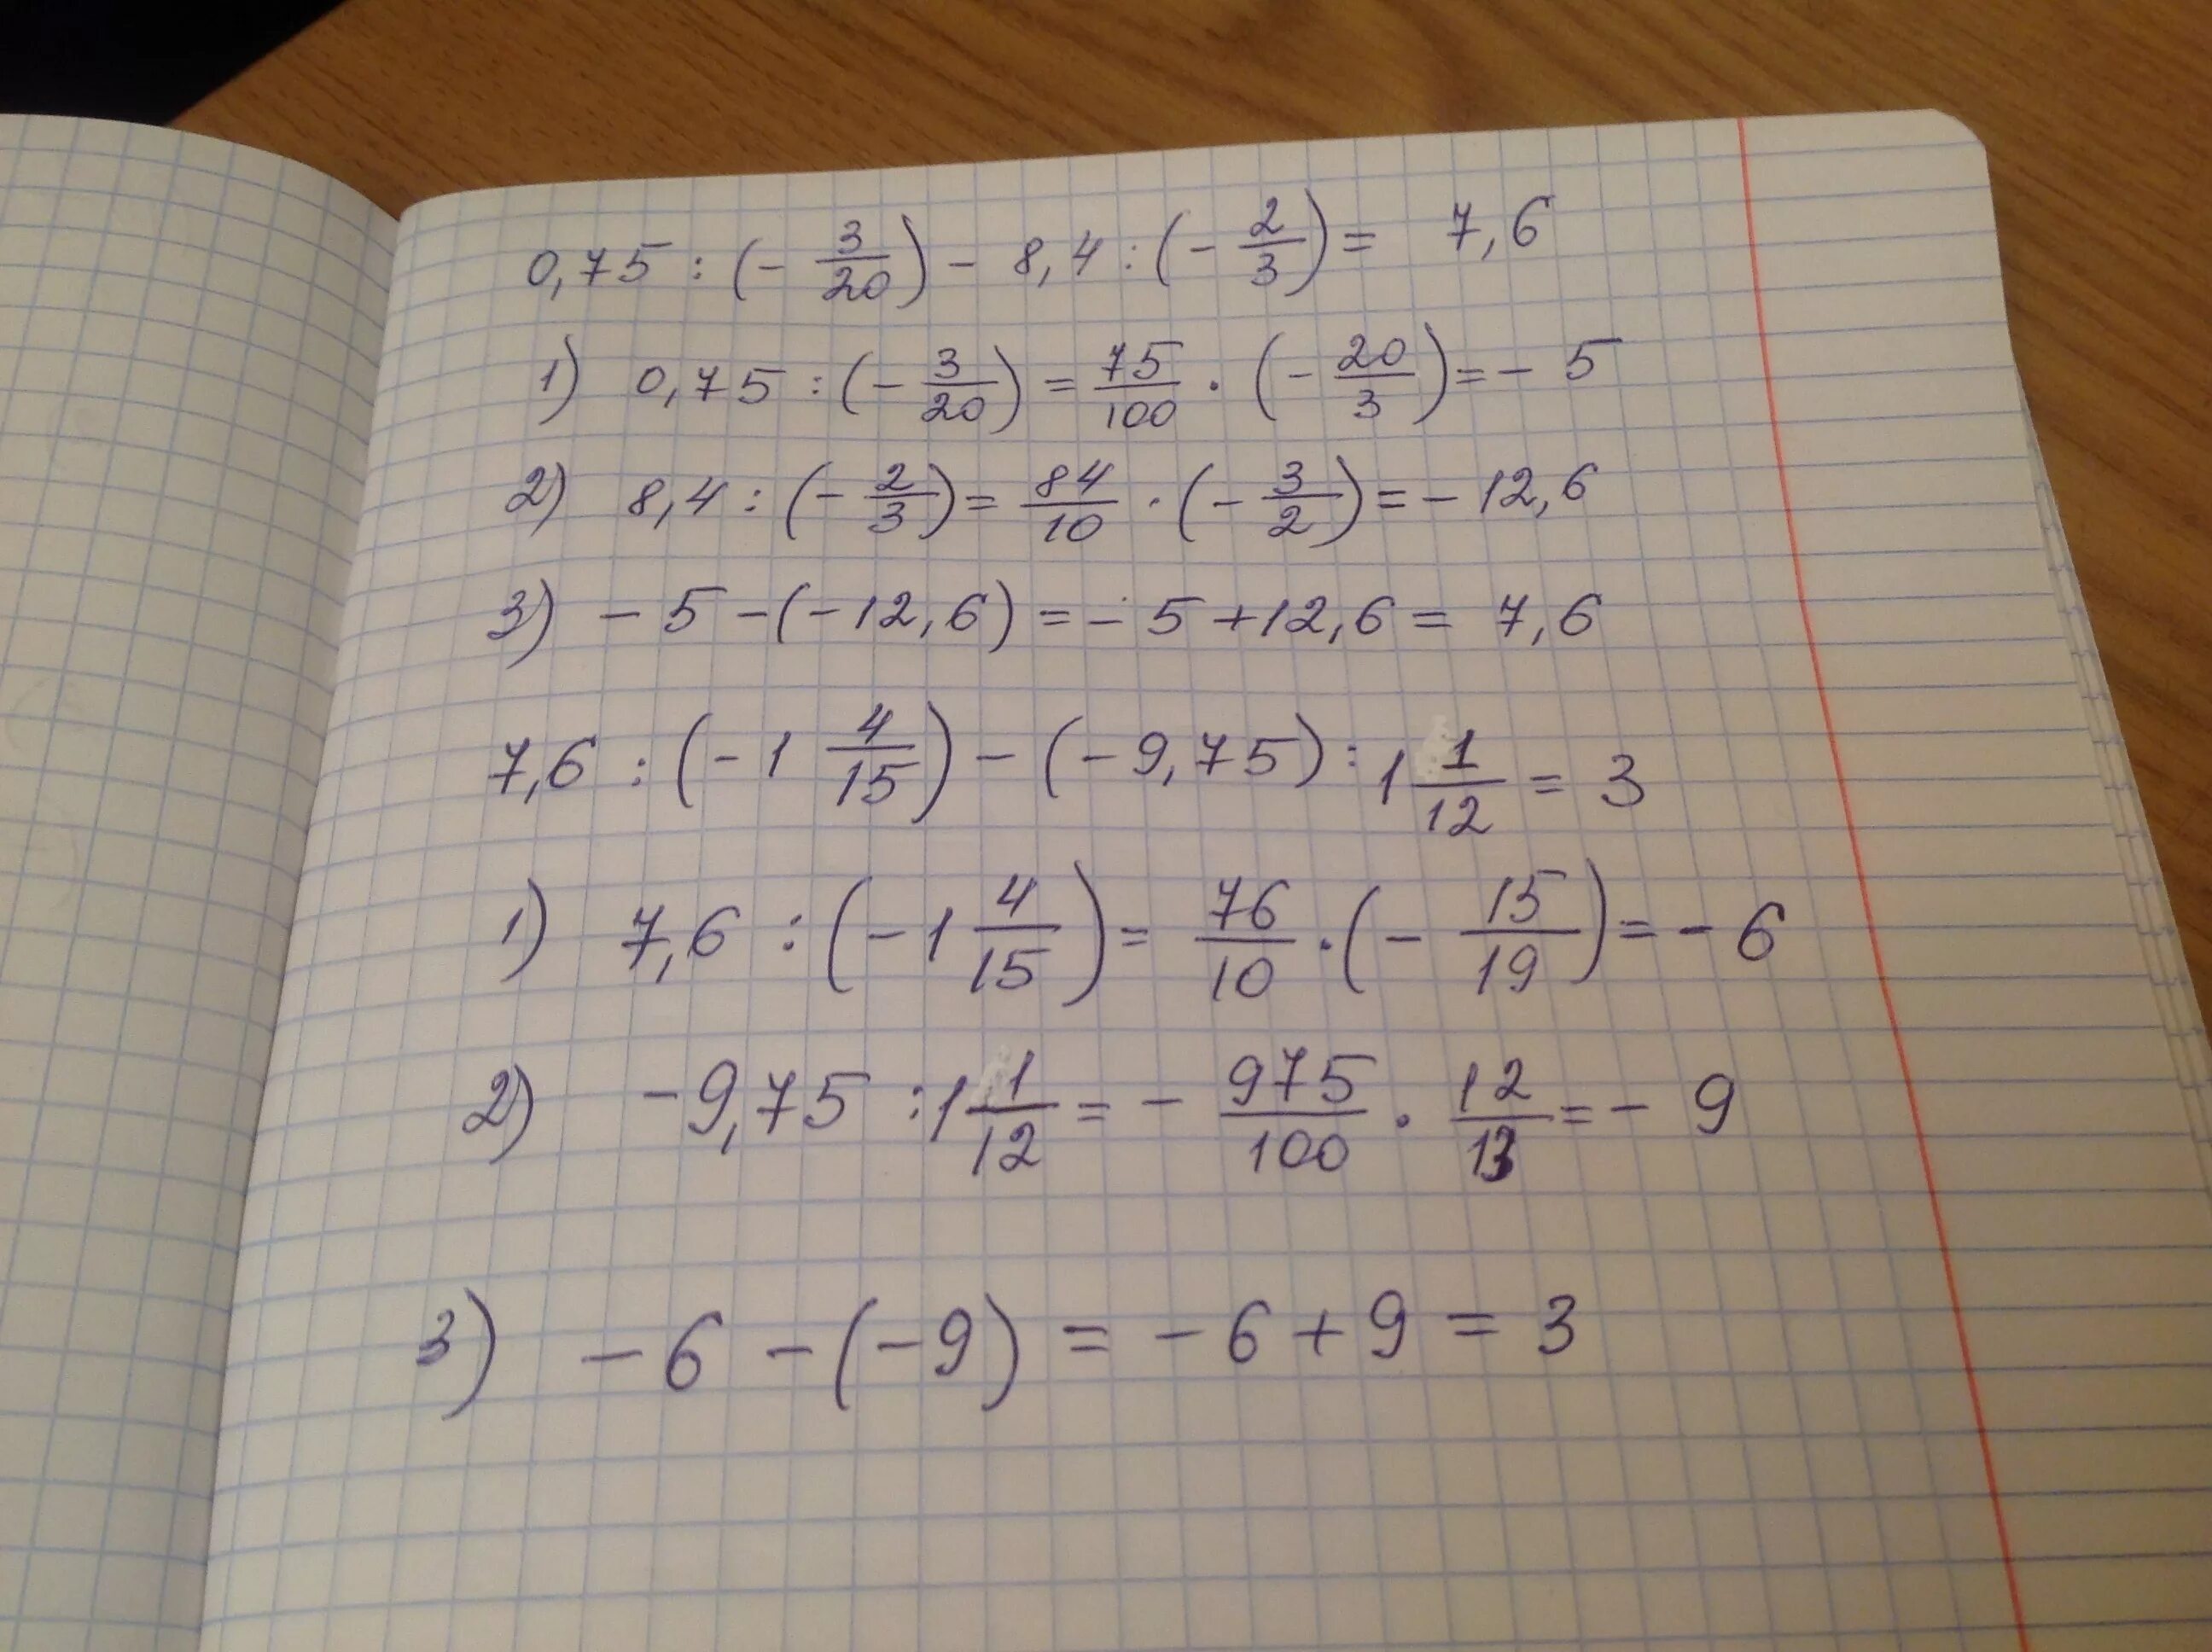 3 1 20 21 решение. 21/4-6(Х+1/12)=0,5х-(х-1/2). 3 0 75х+5/6 -2х 1/4х+2 5. 9,9х-6, 17-8, 17х=0, 75. Вычислить (2,5+1/4)•0,6/(6,6-6/2/3.